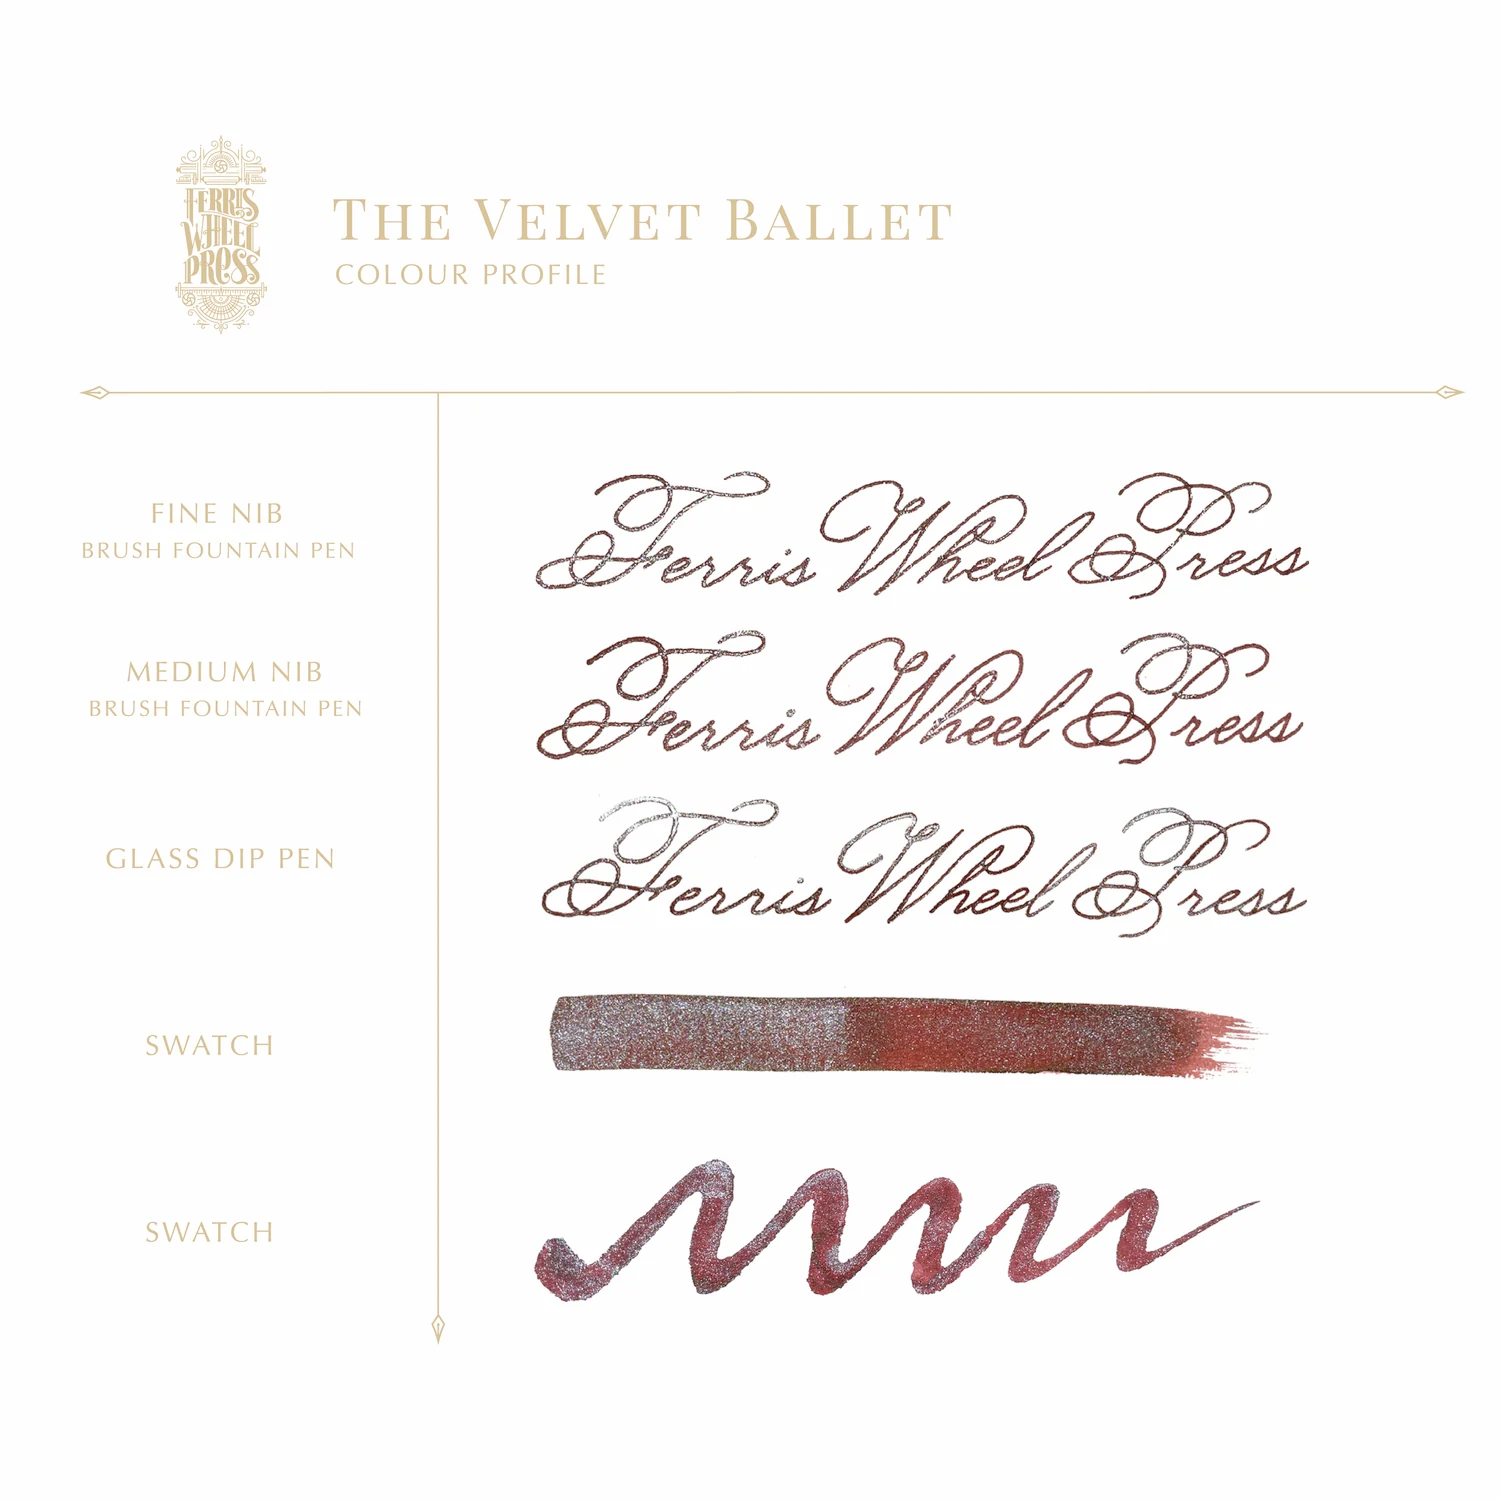 38 ml Füllfederhaltertinte – The Velvet Ballet